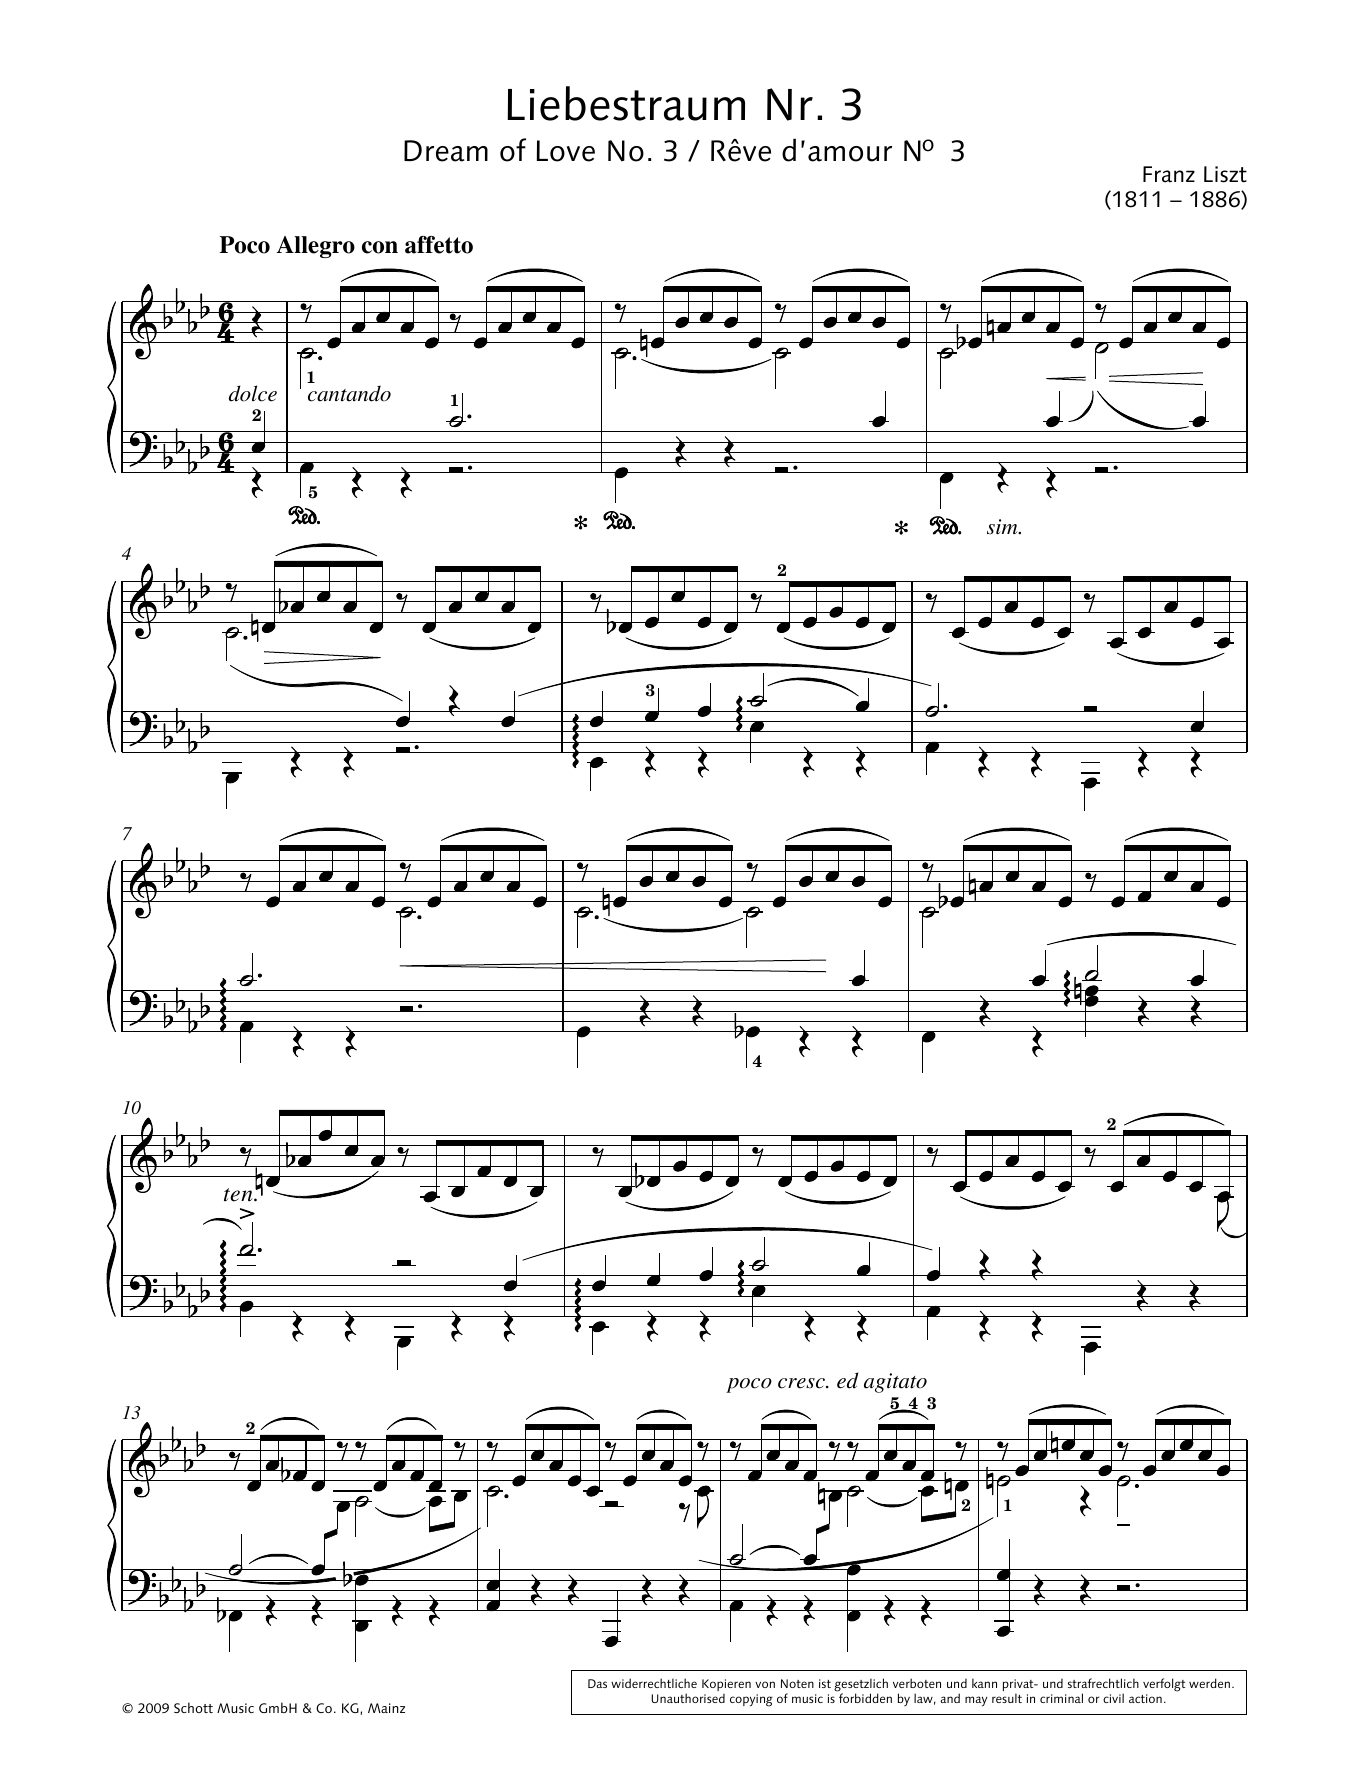 Dream of Love No. 3 in A-flat major (Piano Solo) von Franz Liszt